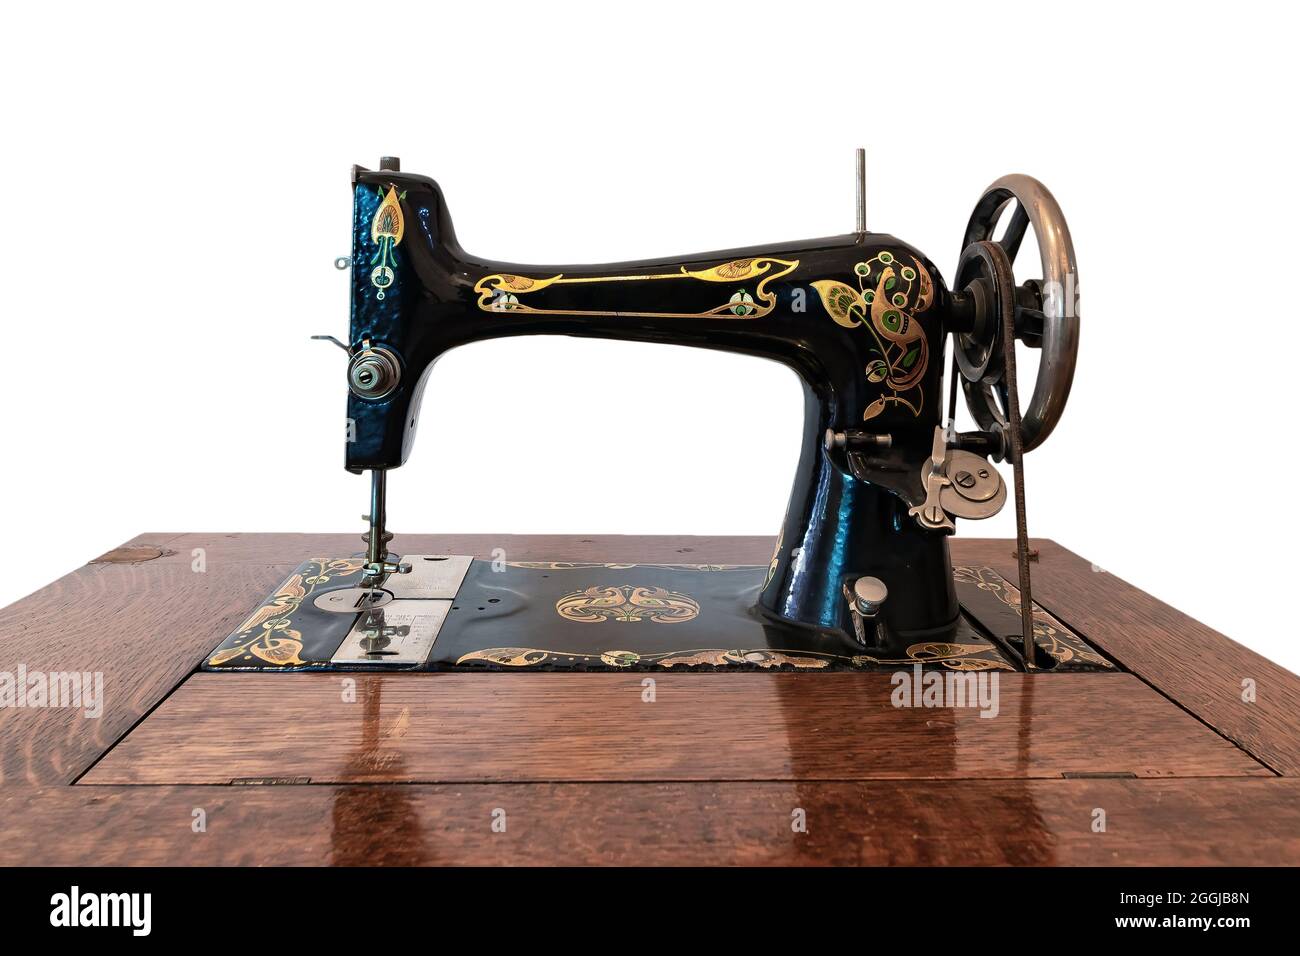 Ancienne machine à coudre dans un mobilier en bois isolé sur fond blanc Banque D'Images